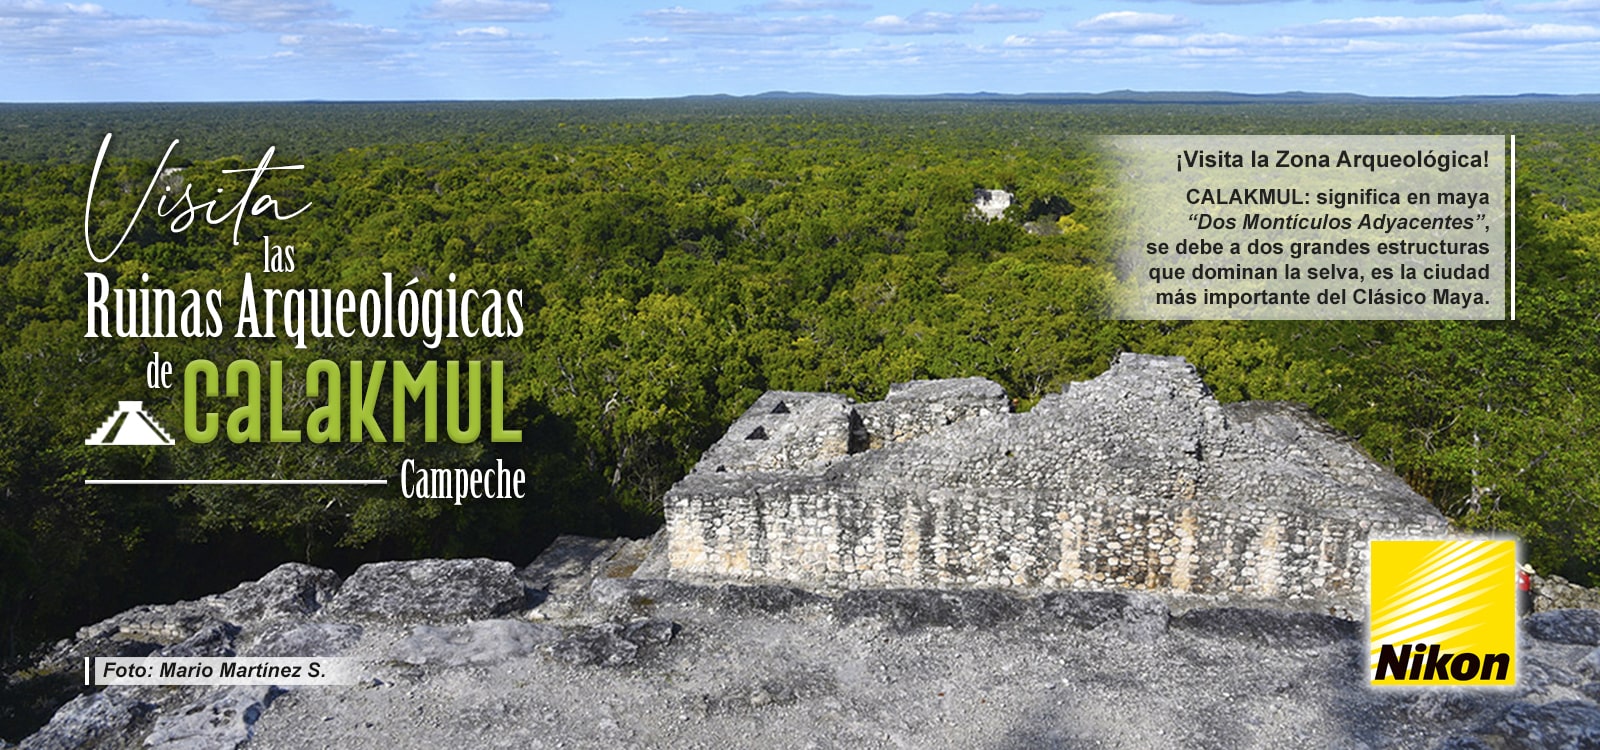 CALAKMUL: significa en Maya "dos montículos adyacentes"